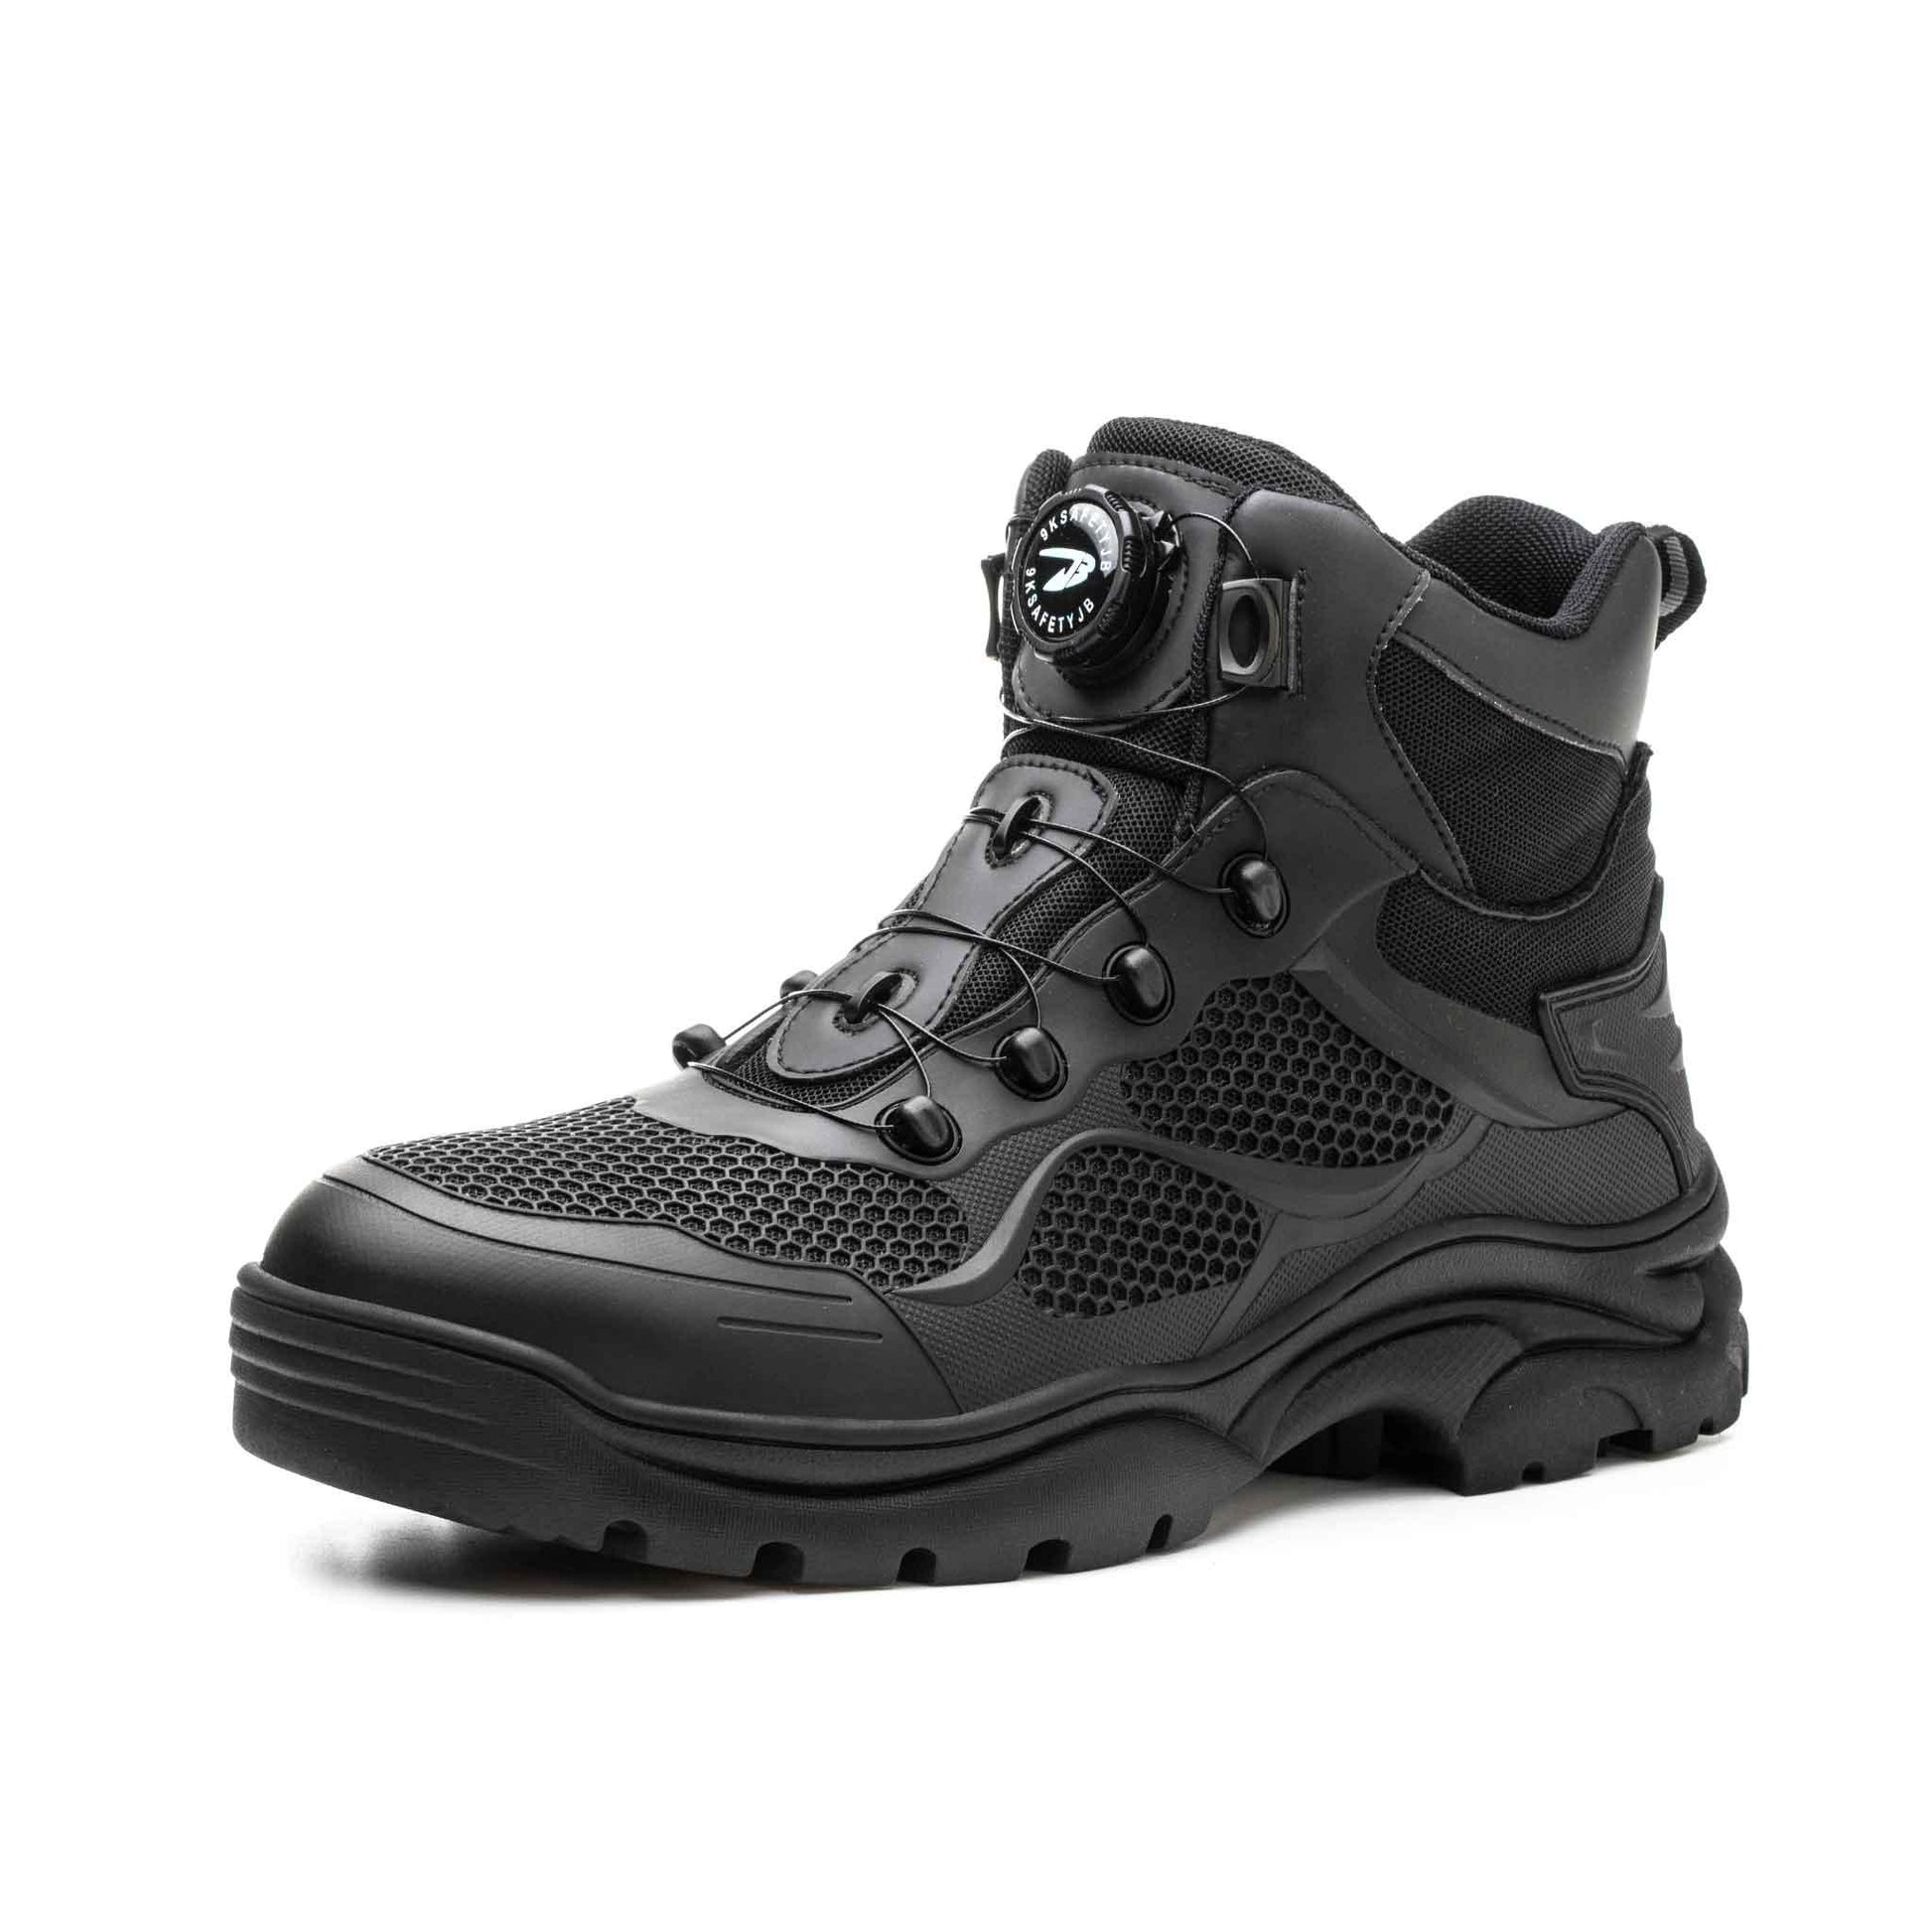 Women's Steel Toe Work Boots - Rotating Shoelaces | B217 - USINE PRO Footwear